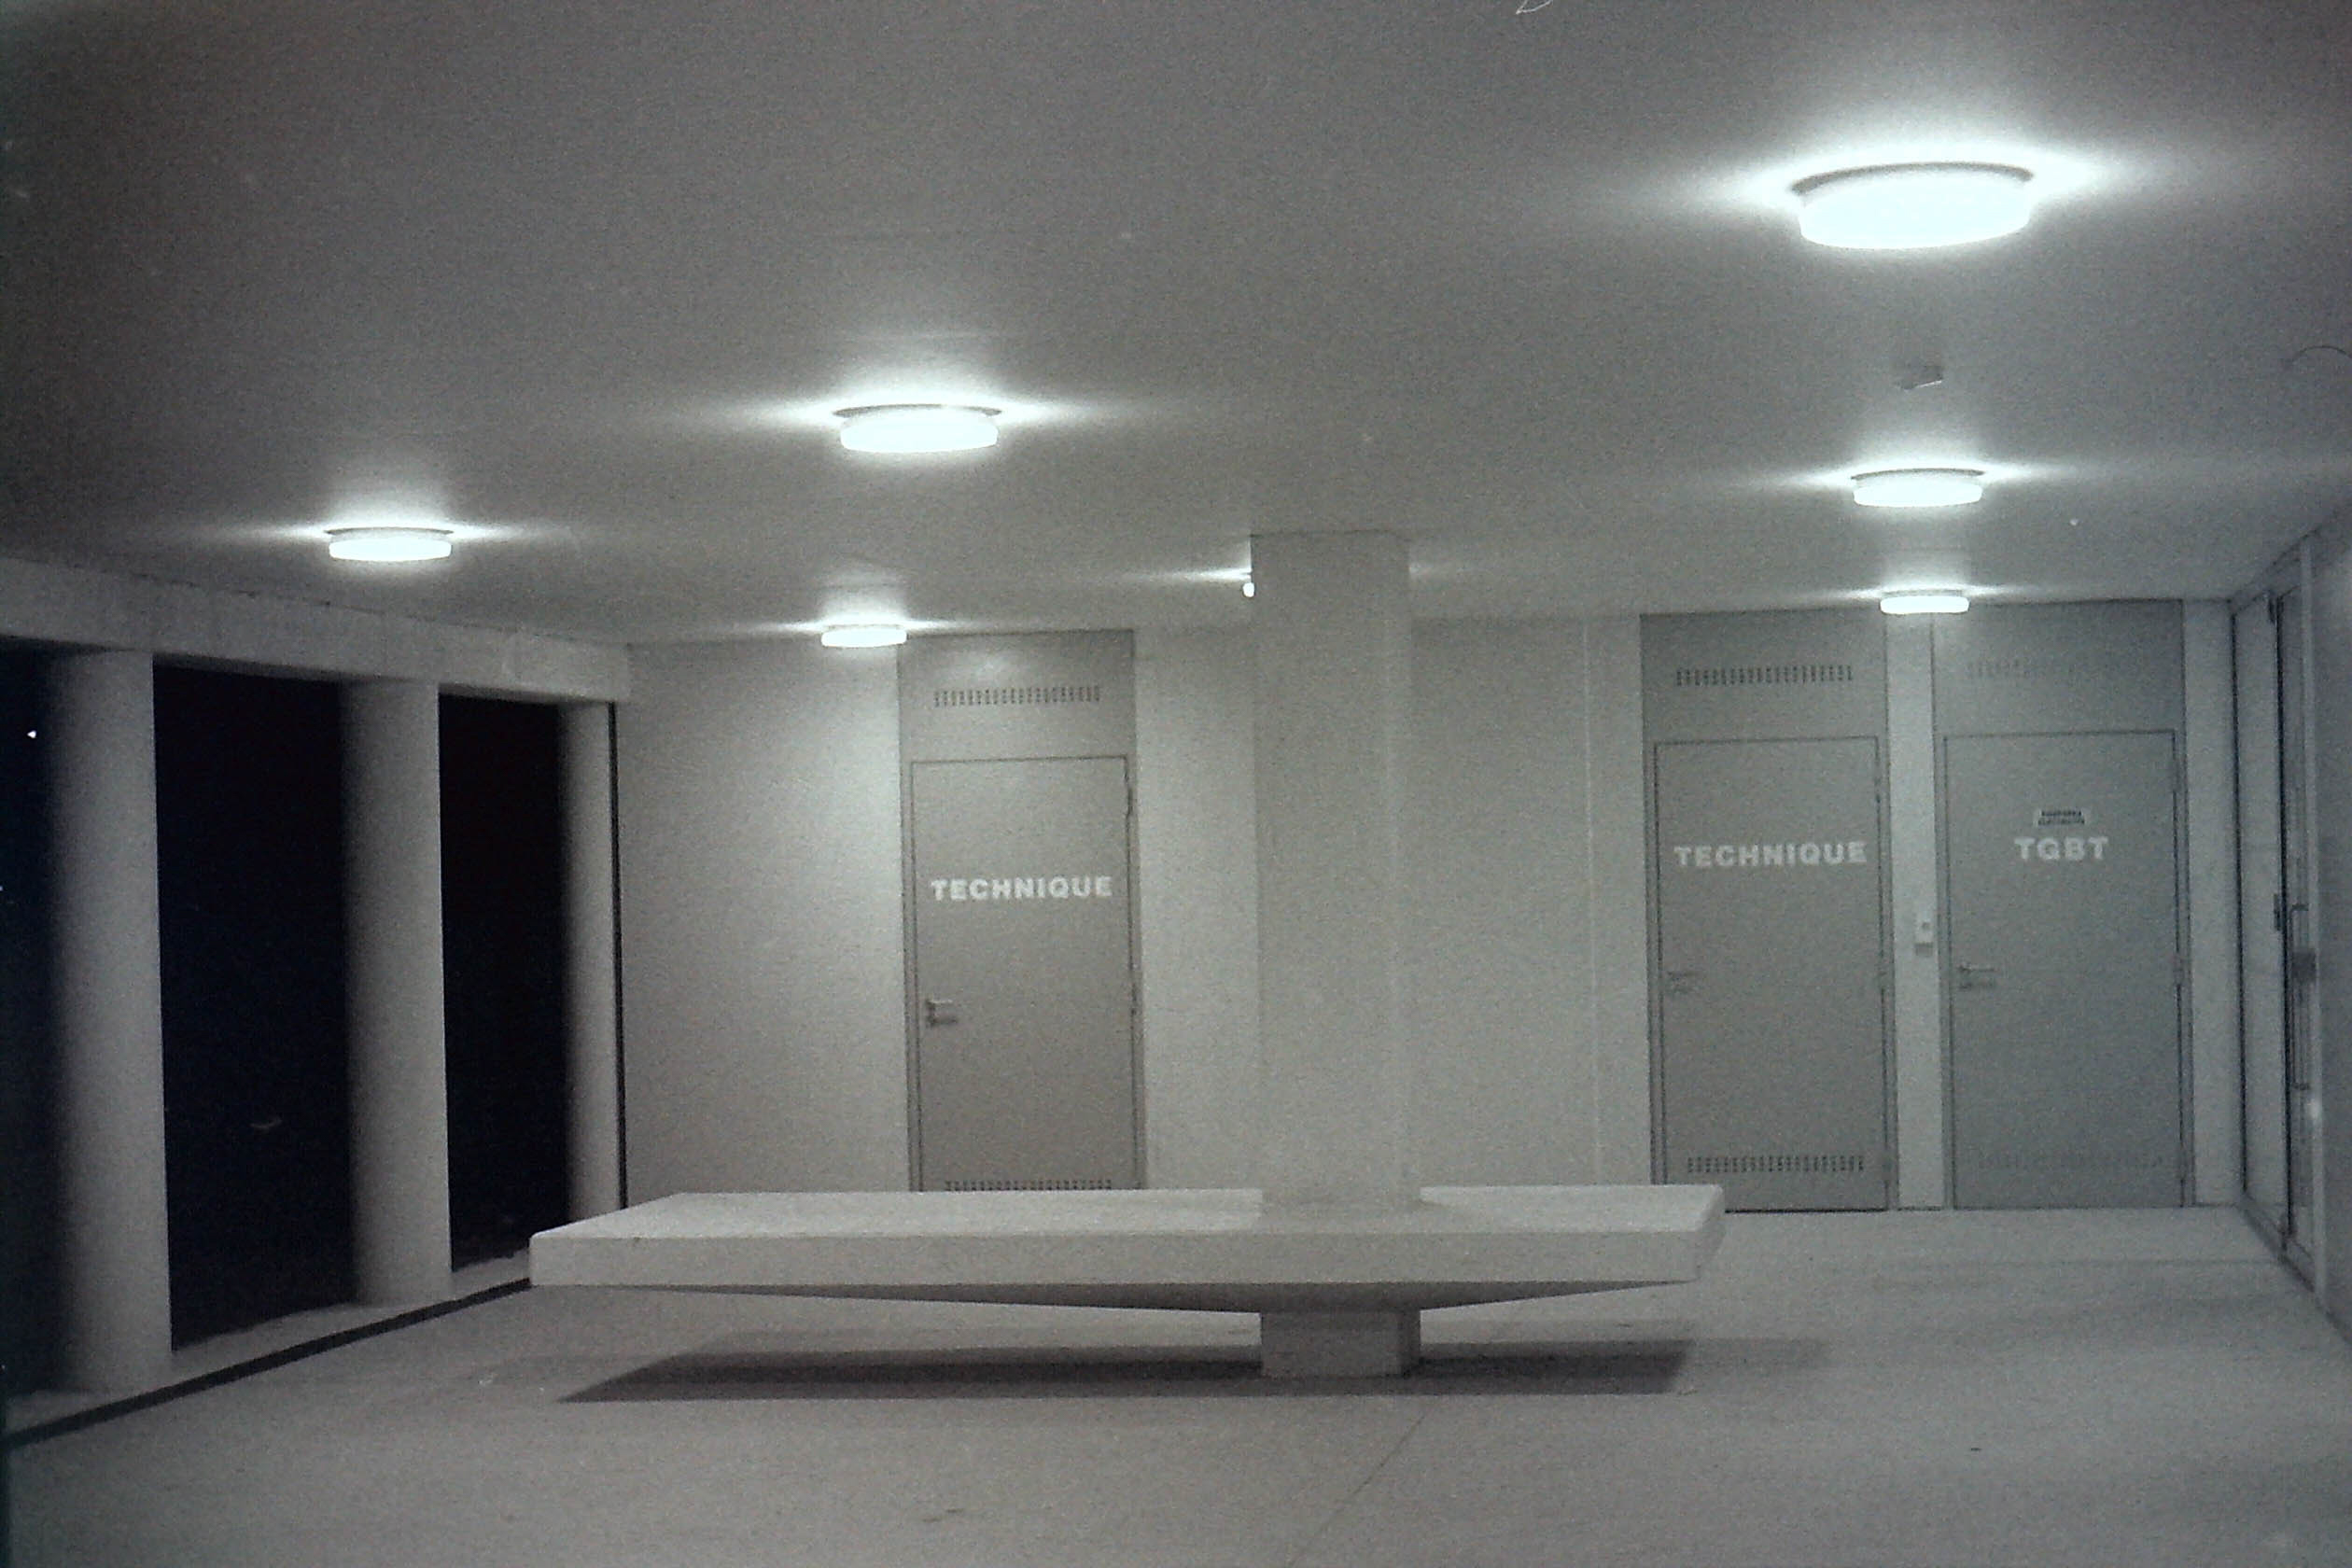 spotlights eclairant un lieu de vie futuriste avec une table et des portes de local technique dans la nuit en noir et blanc